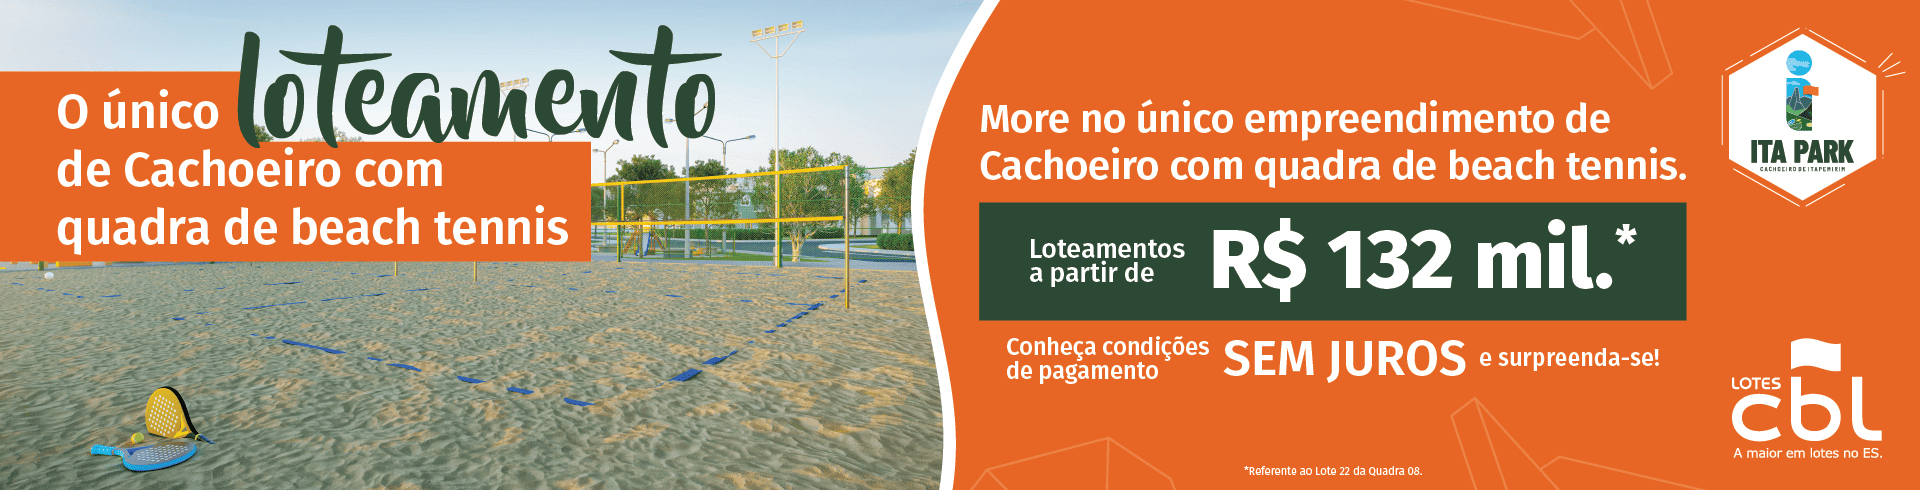 Lotes CBL - Cachoeiro - Ita Park com Quadra de Beach Tennis